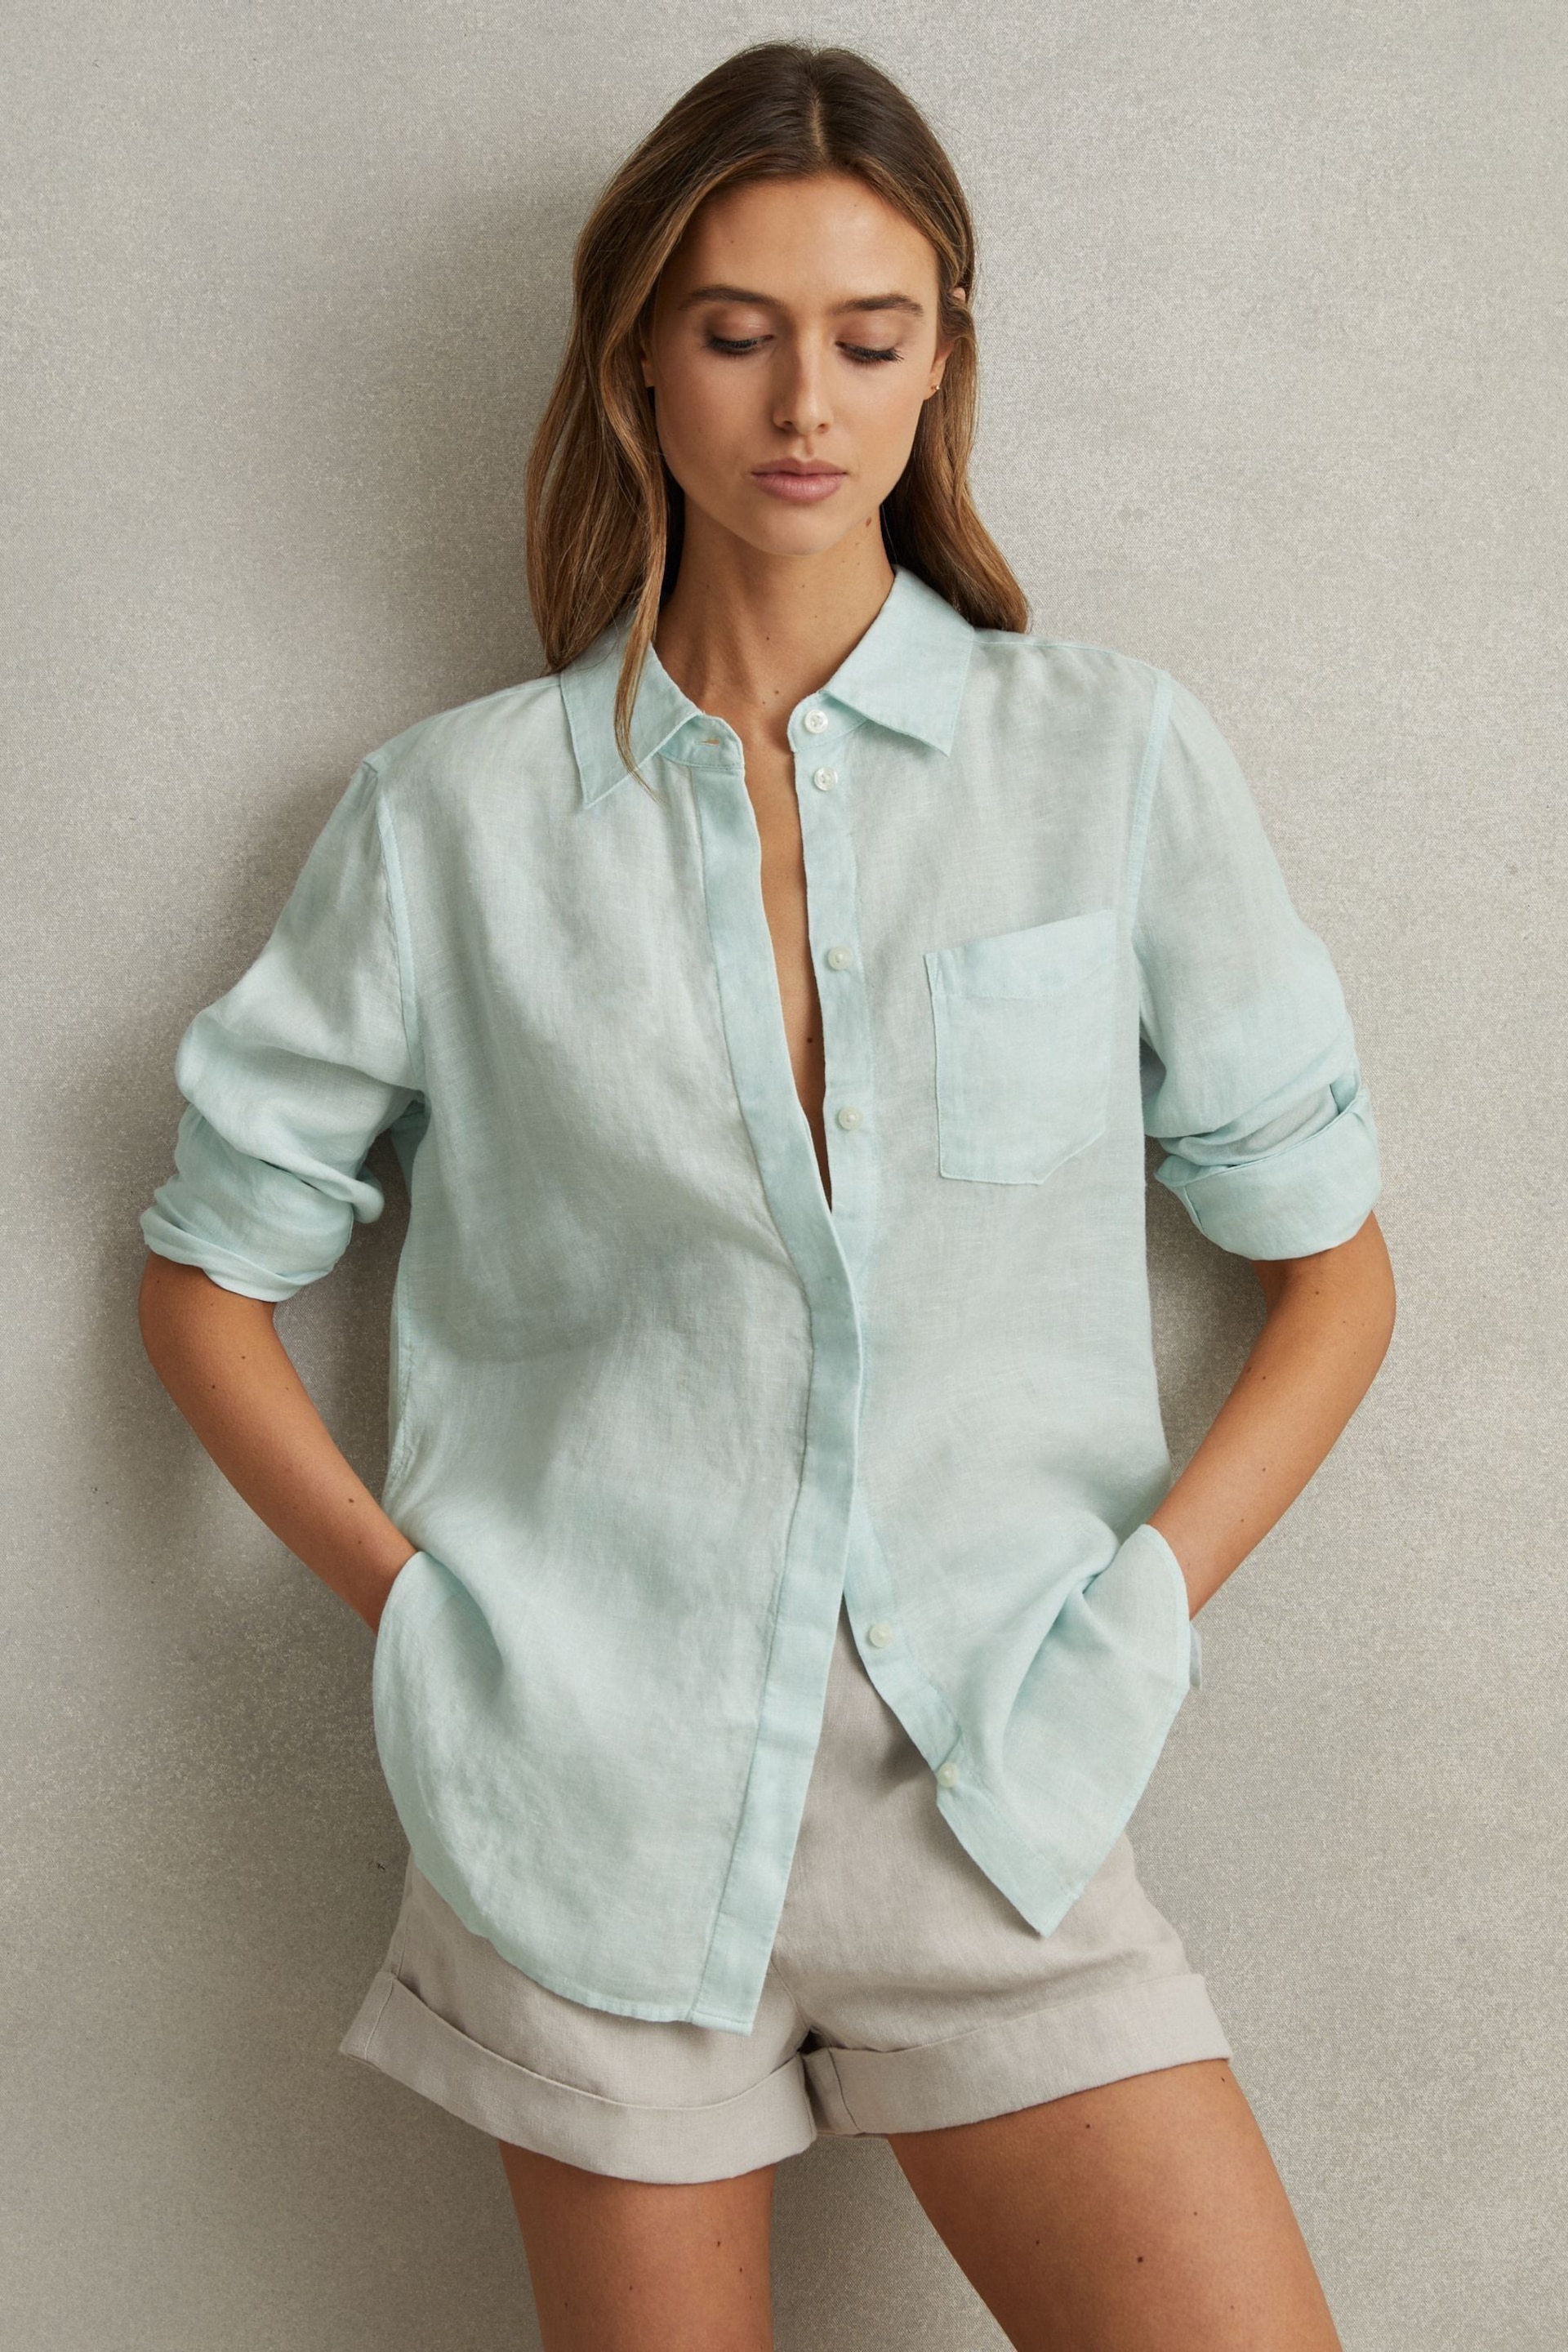 Reiss Aqua Belle Linen Button-Through Shirt - Image 1 of 6